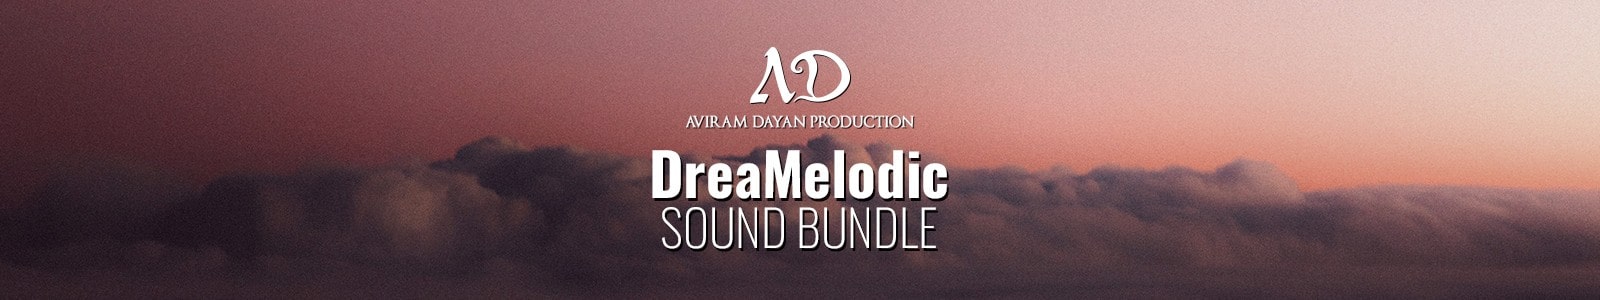 Aviram Dayan Production DreaMelodic Sound Bundle